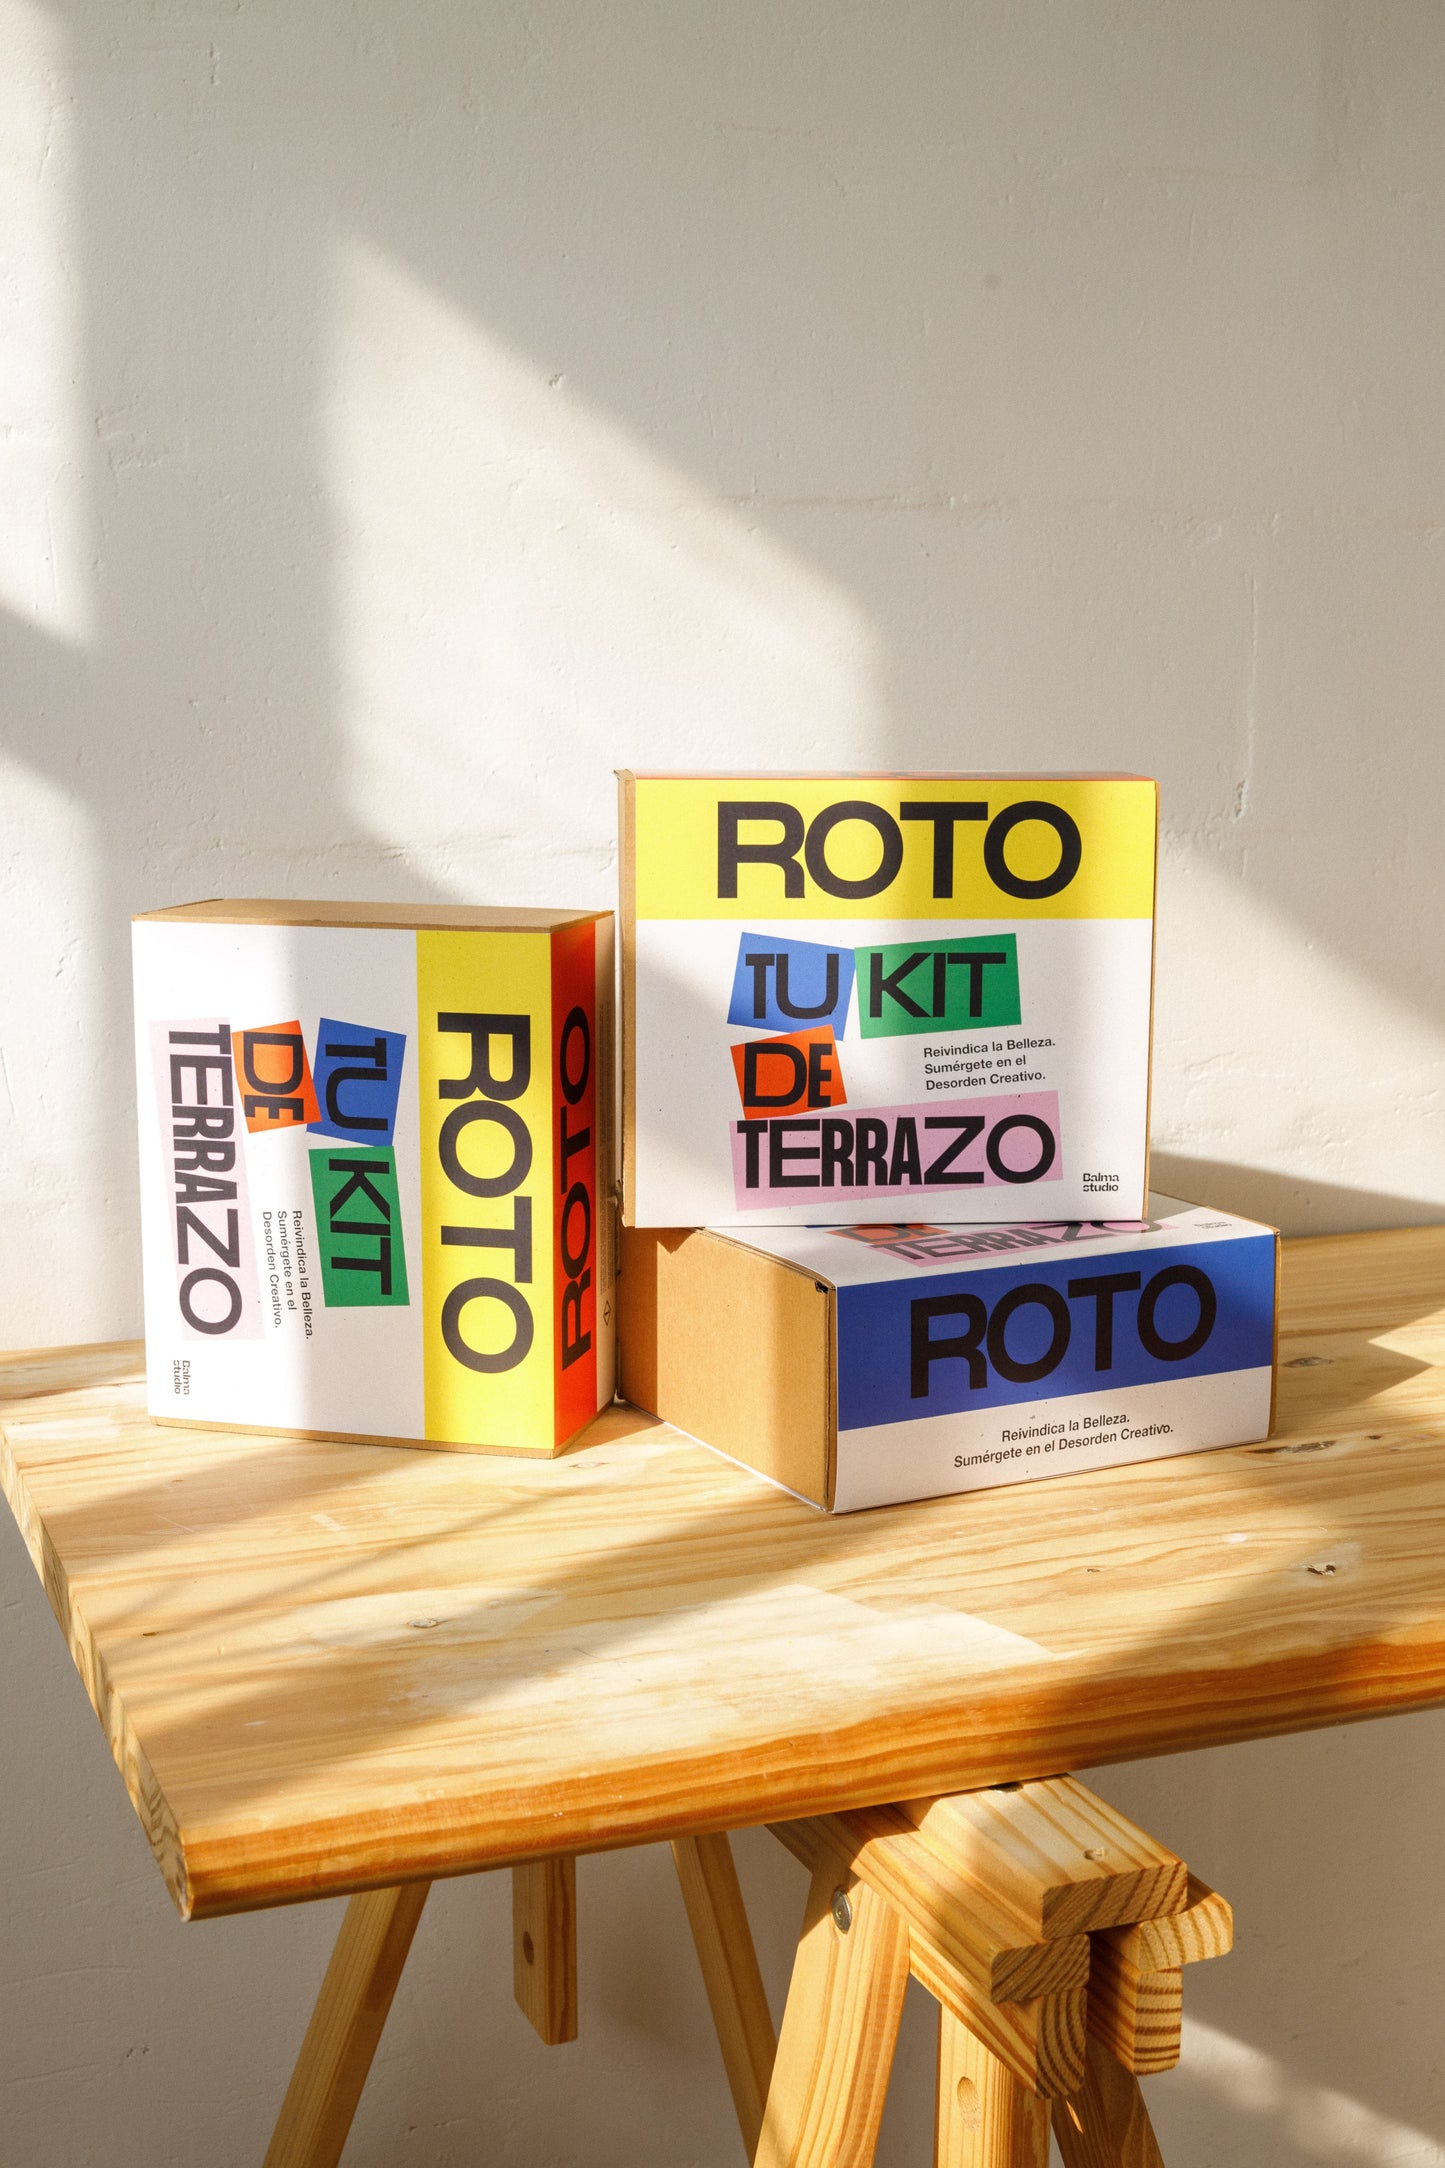 ROTO - Tu Kit de Terrazo